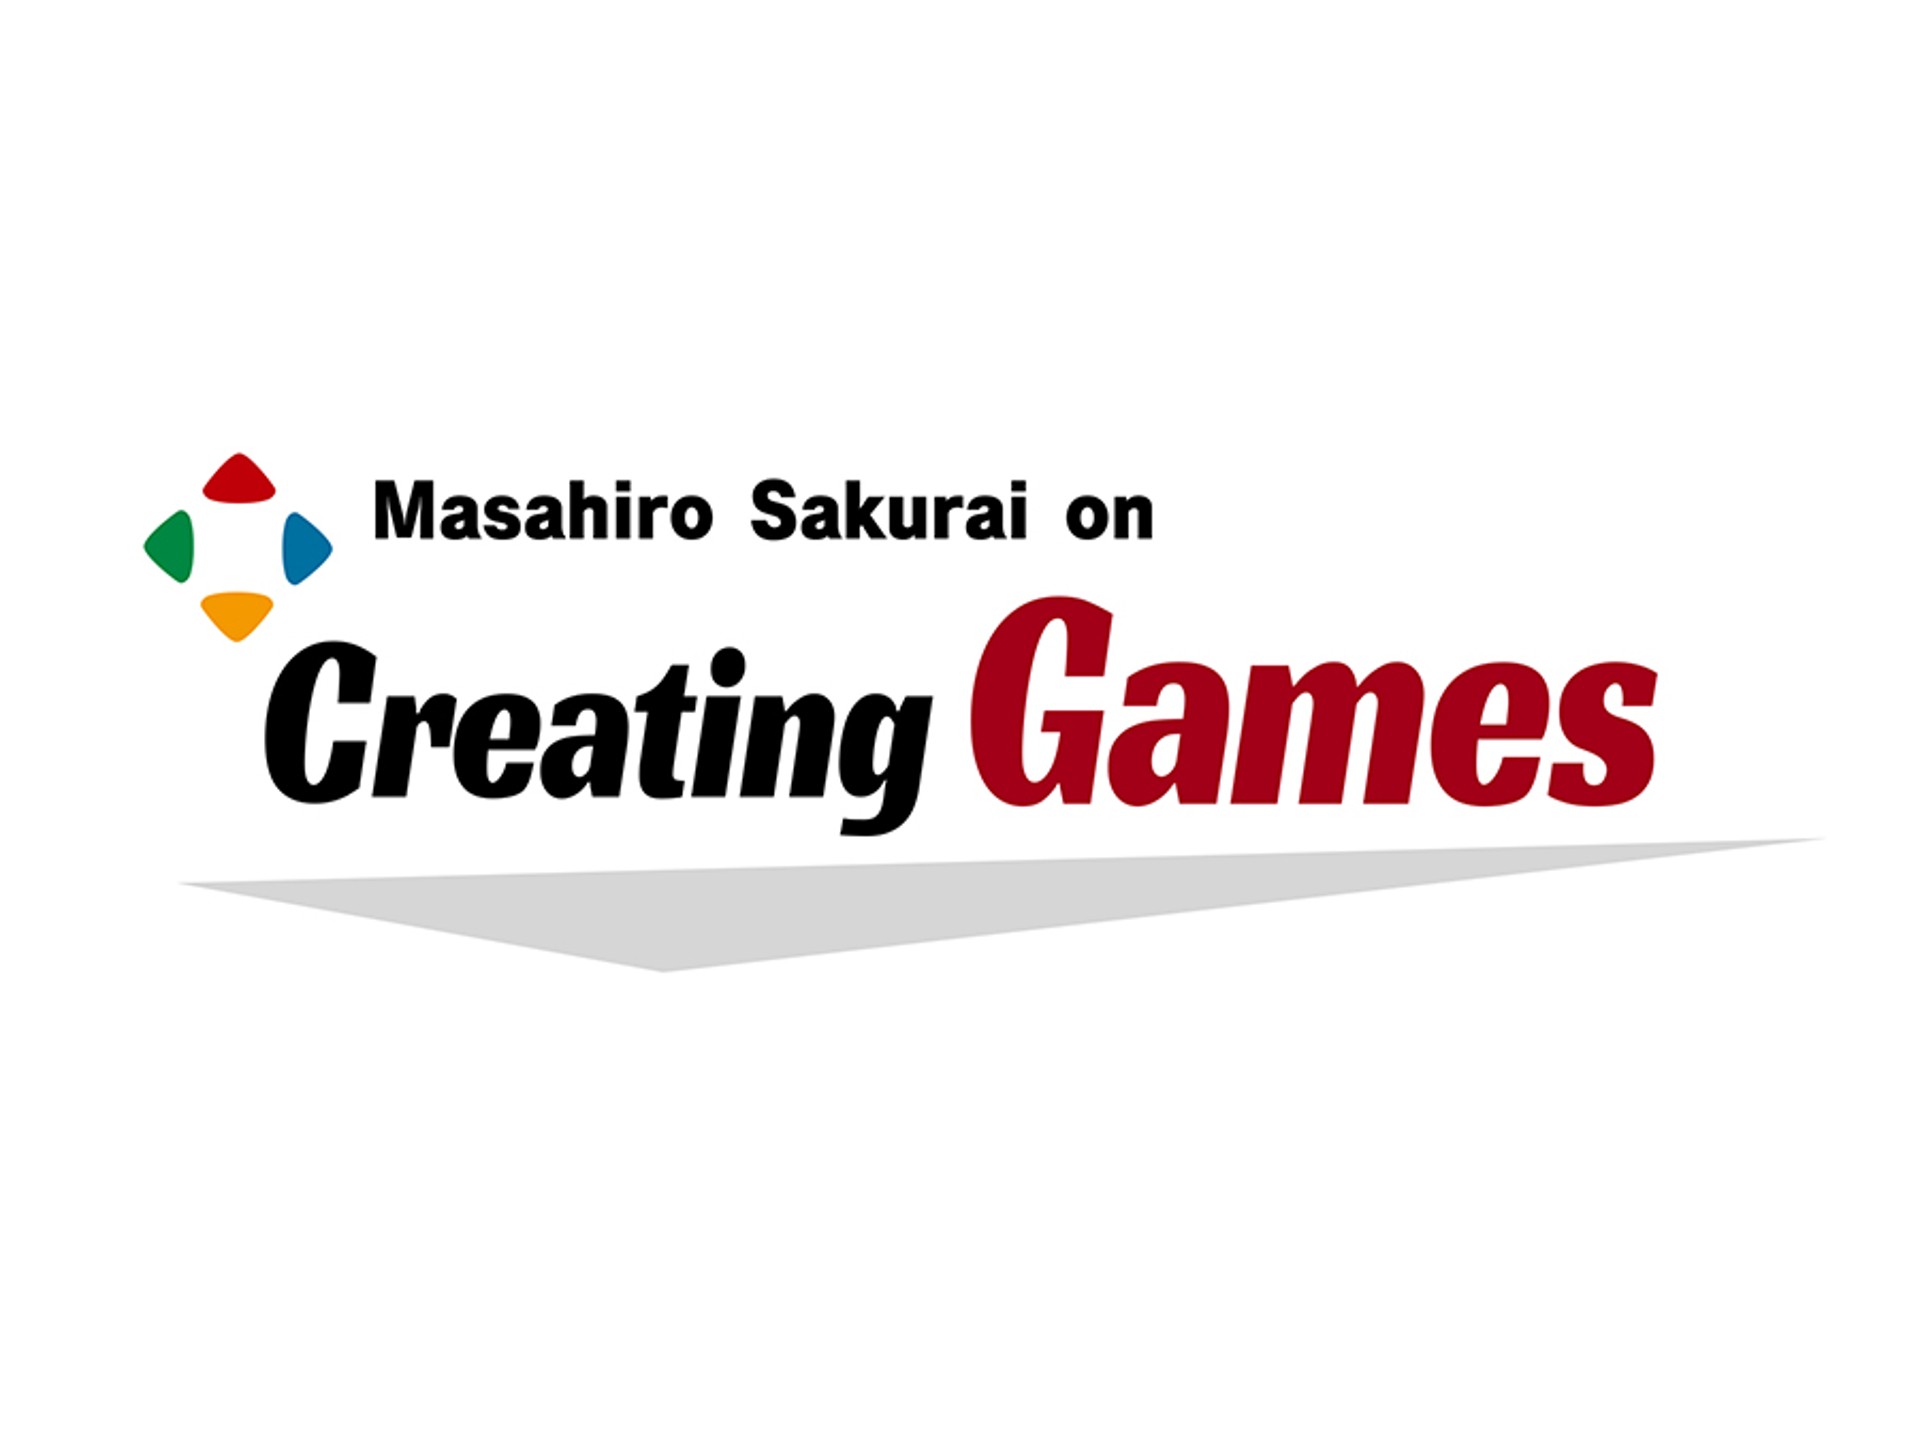 Masahiro Sakurai ผู้กำกับเกมมากฝีมือ เปิดช่อง Youtube เป็นของตัวเองแล้ว เน้นให้ความรู้การพัฒนาเกม